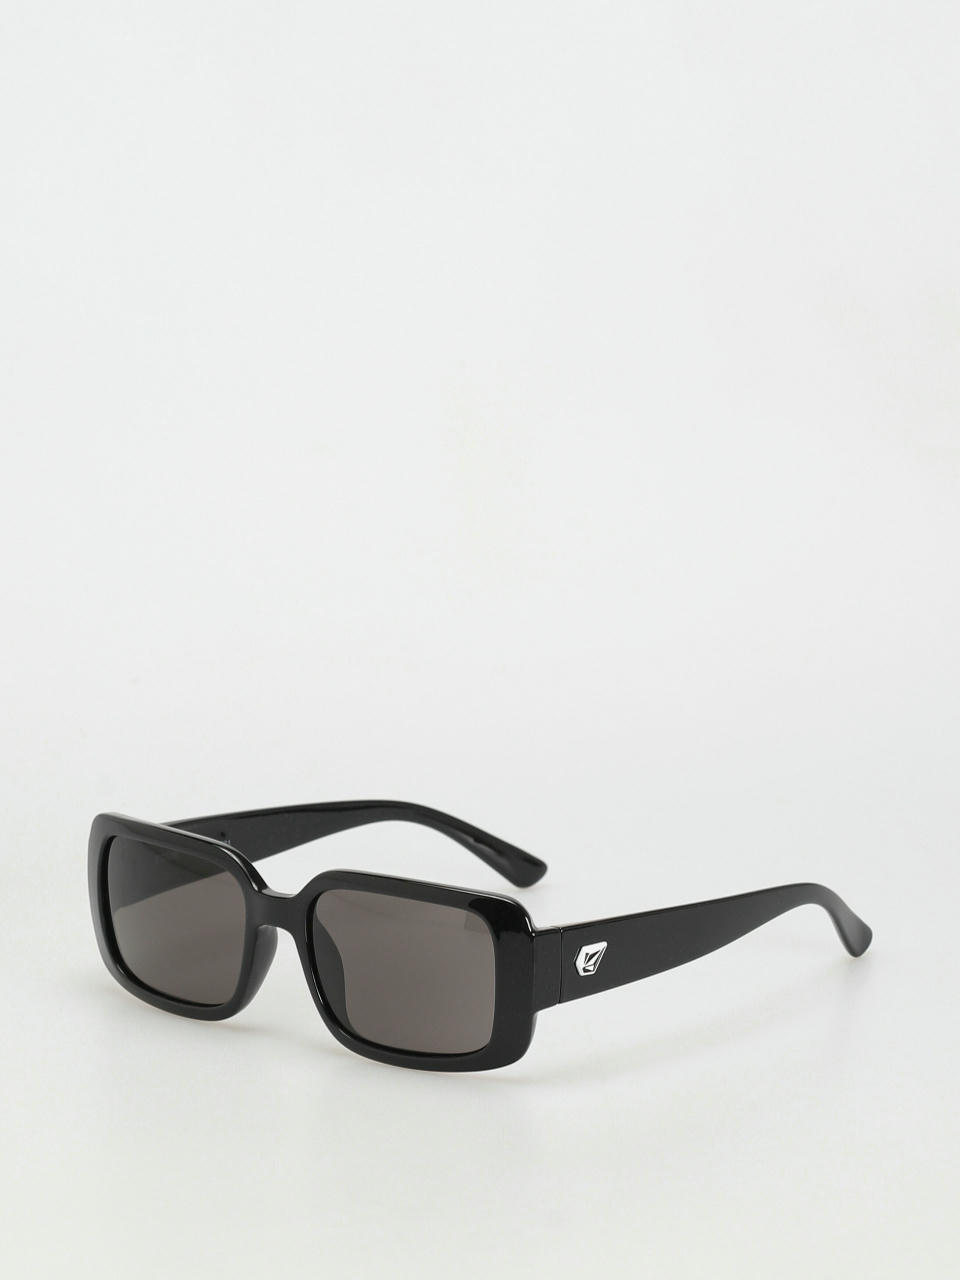 Volcom True Sunglasses (gloss black/gray)